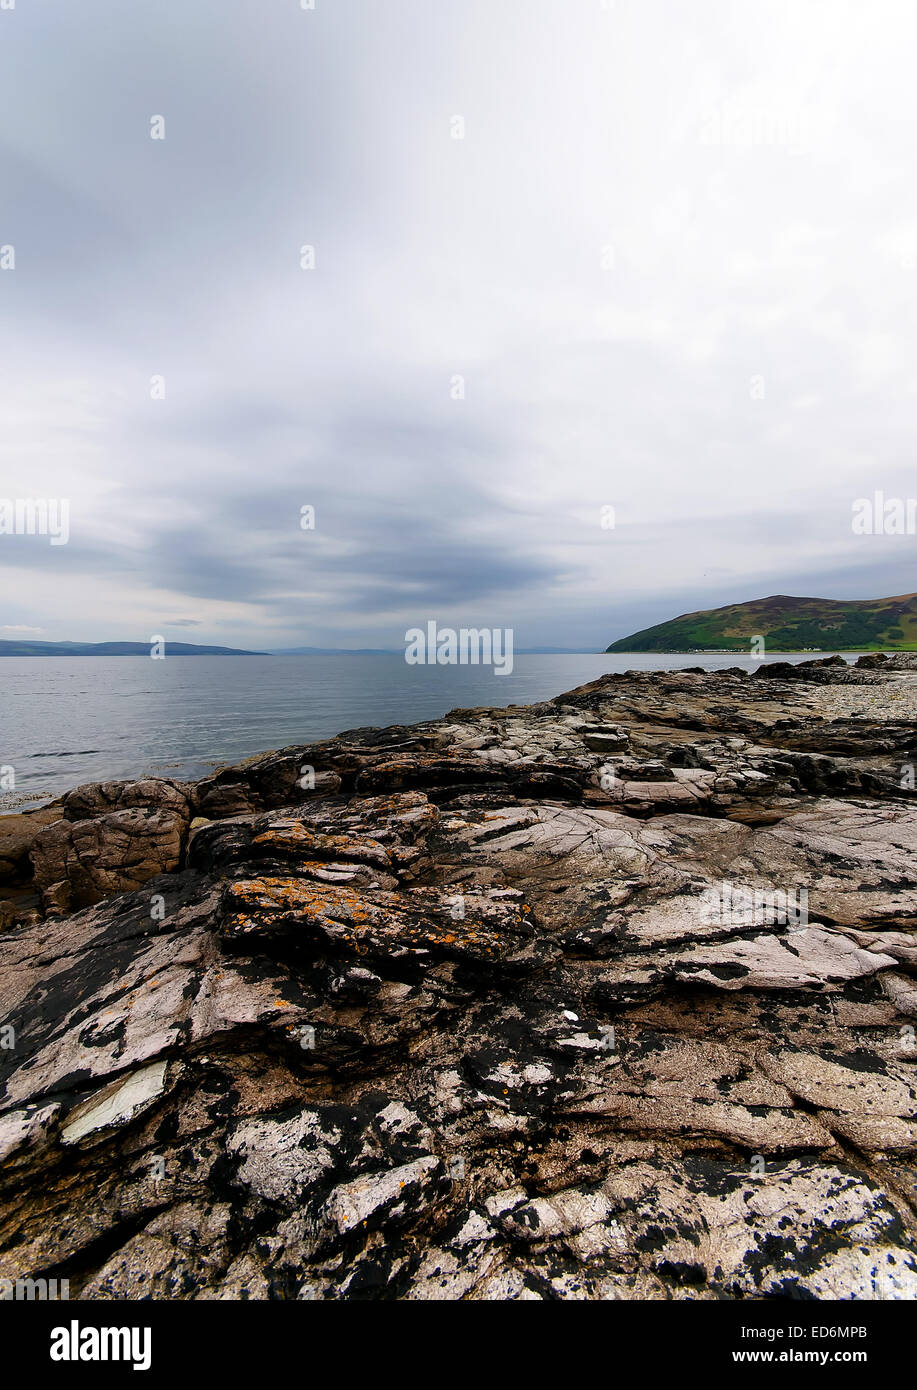 The coastline at Lochranza on The Isle of Arran, Scotland Stock Photo